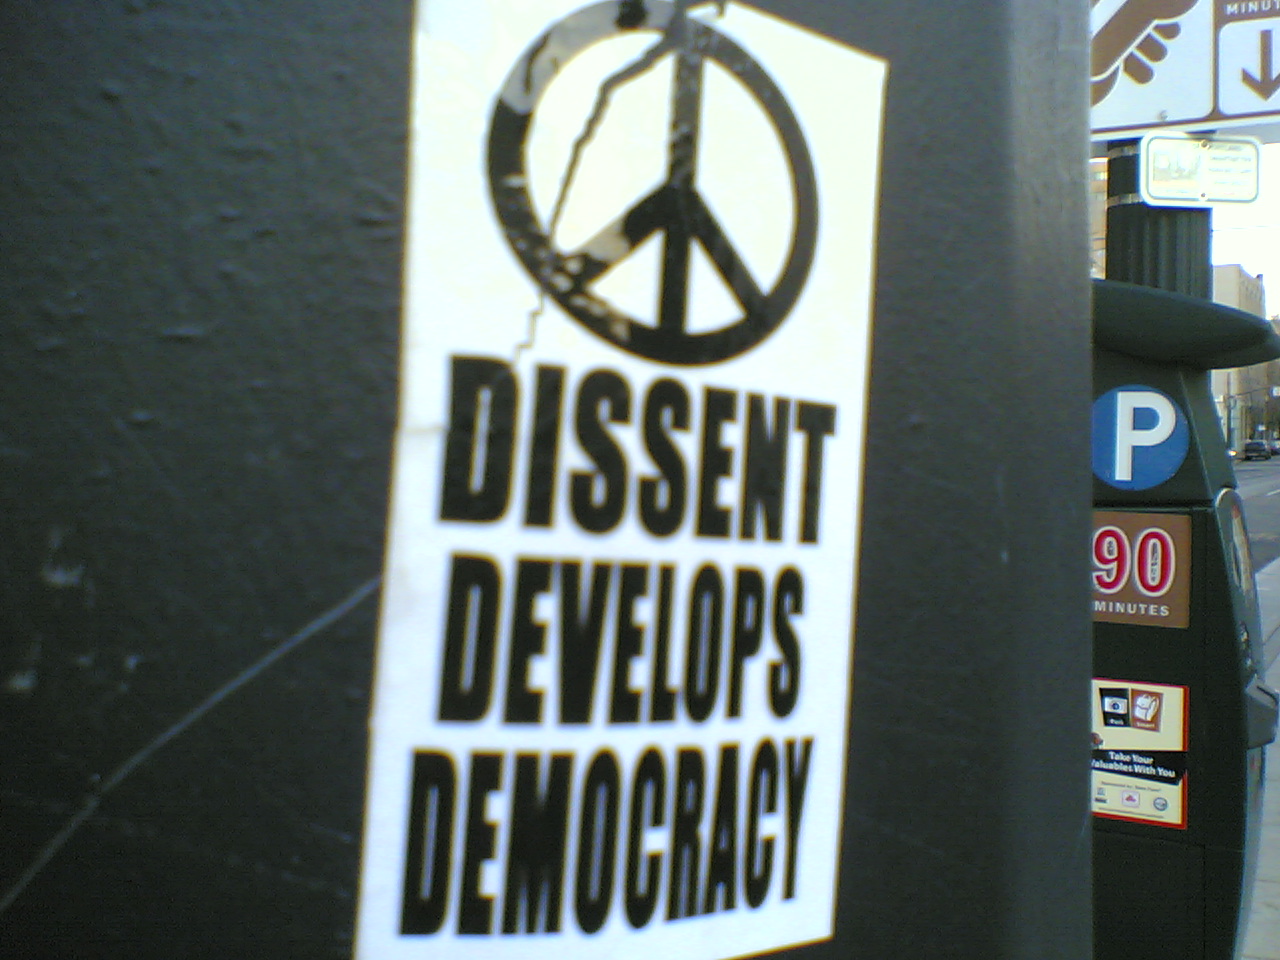 Dissent_develops_democracy_sticker